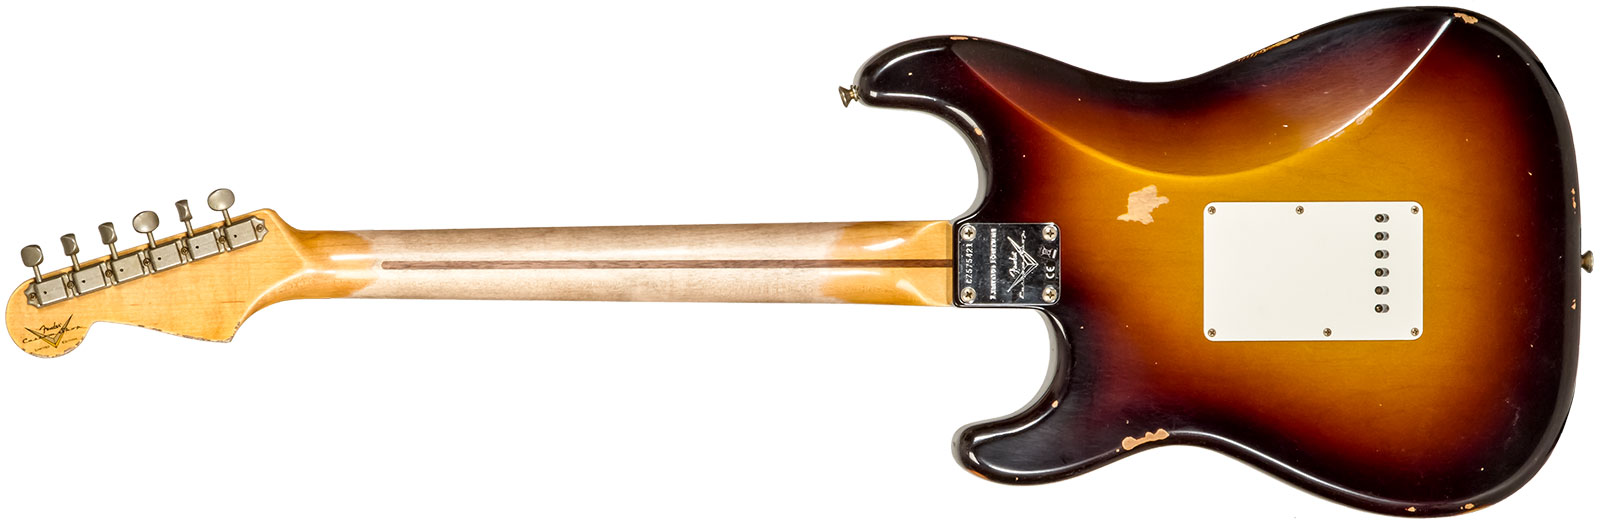 Fender Custom Shop Strat 1957 3s Trem Mn #cz575421 - Relic 2-color Sunburst - Str shape electric guitar - Variation 1